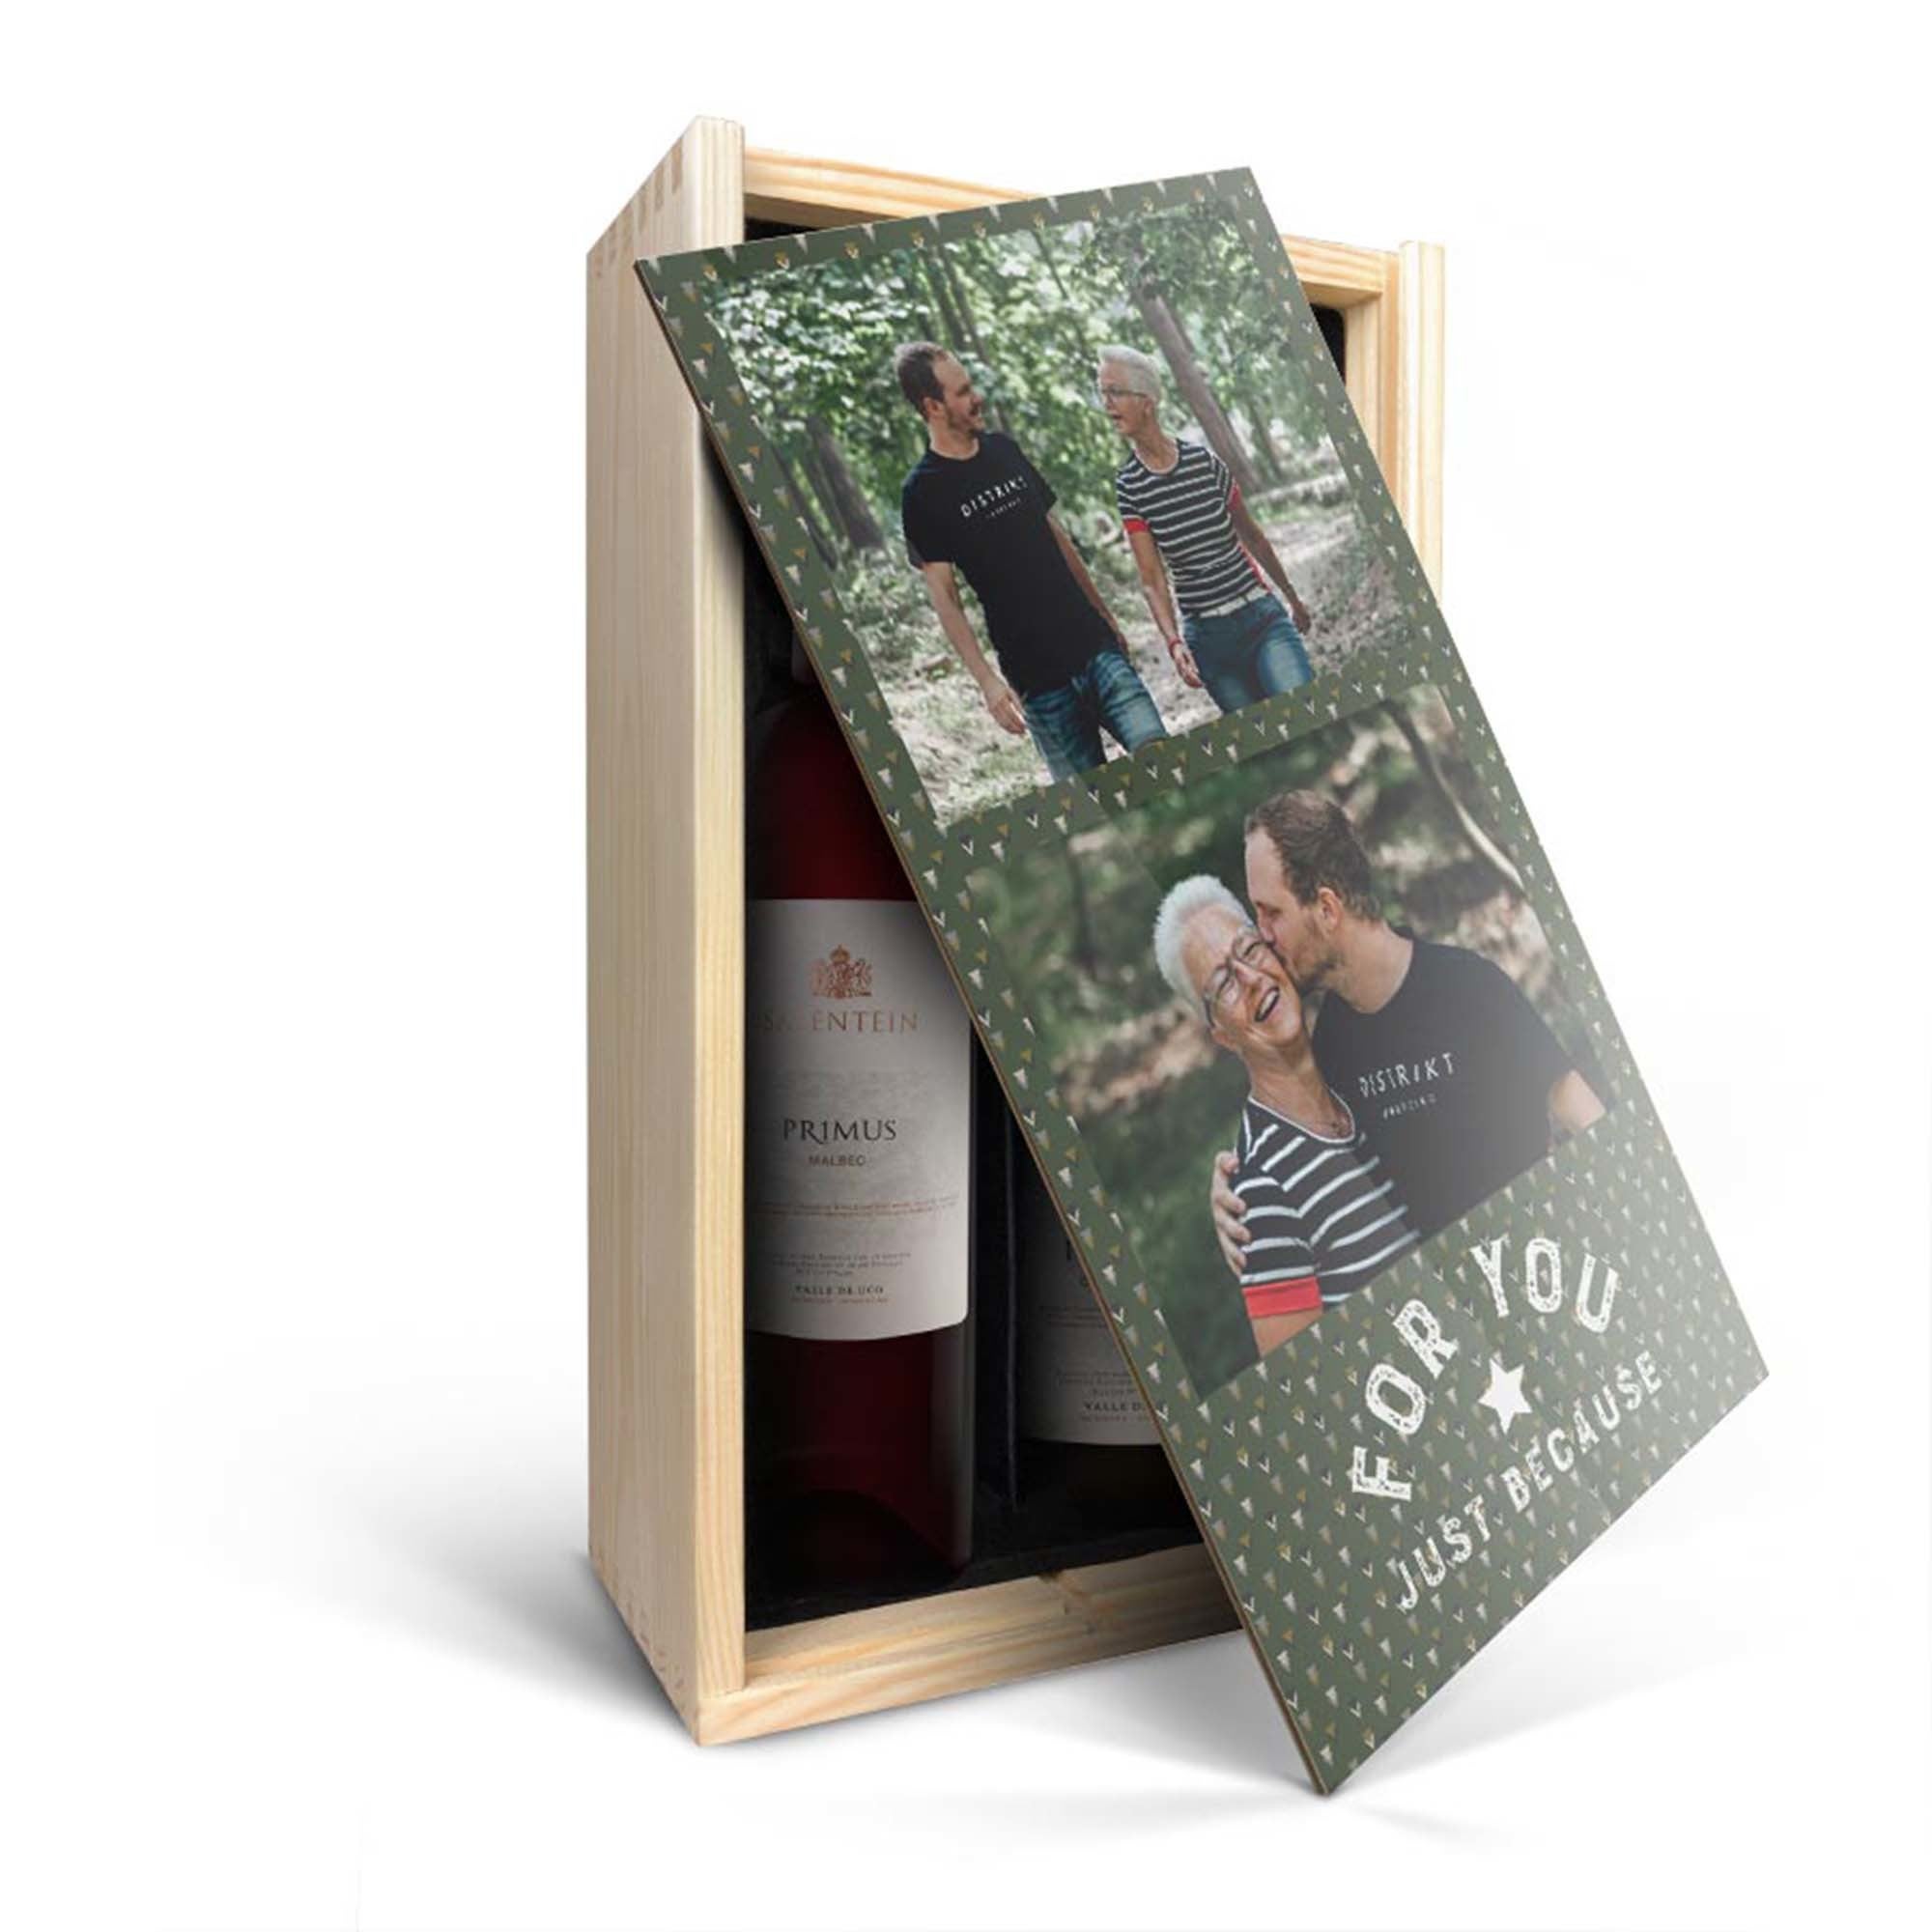 Pacote de vinho em caixa impressa - Salentein Primus Malbec e chardonnay